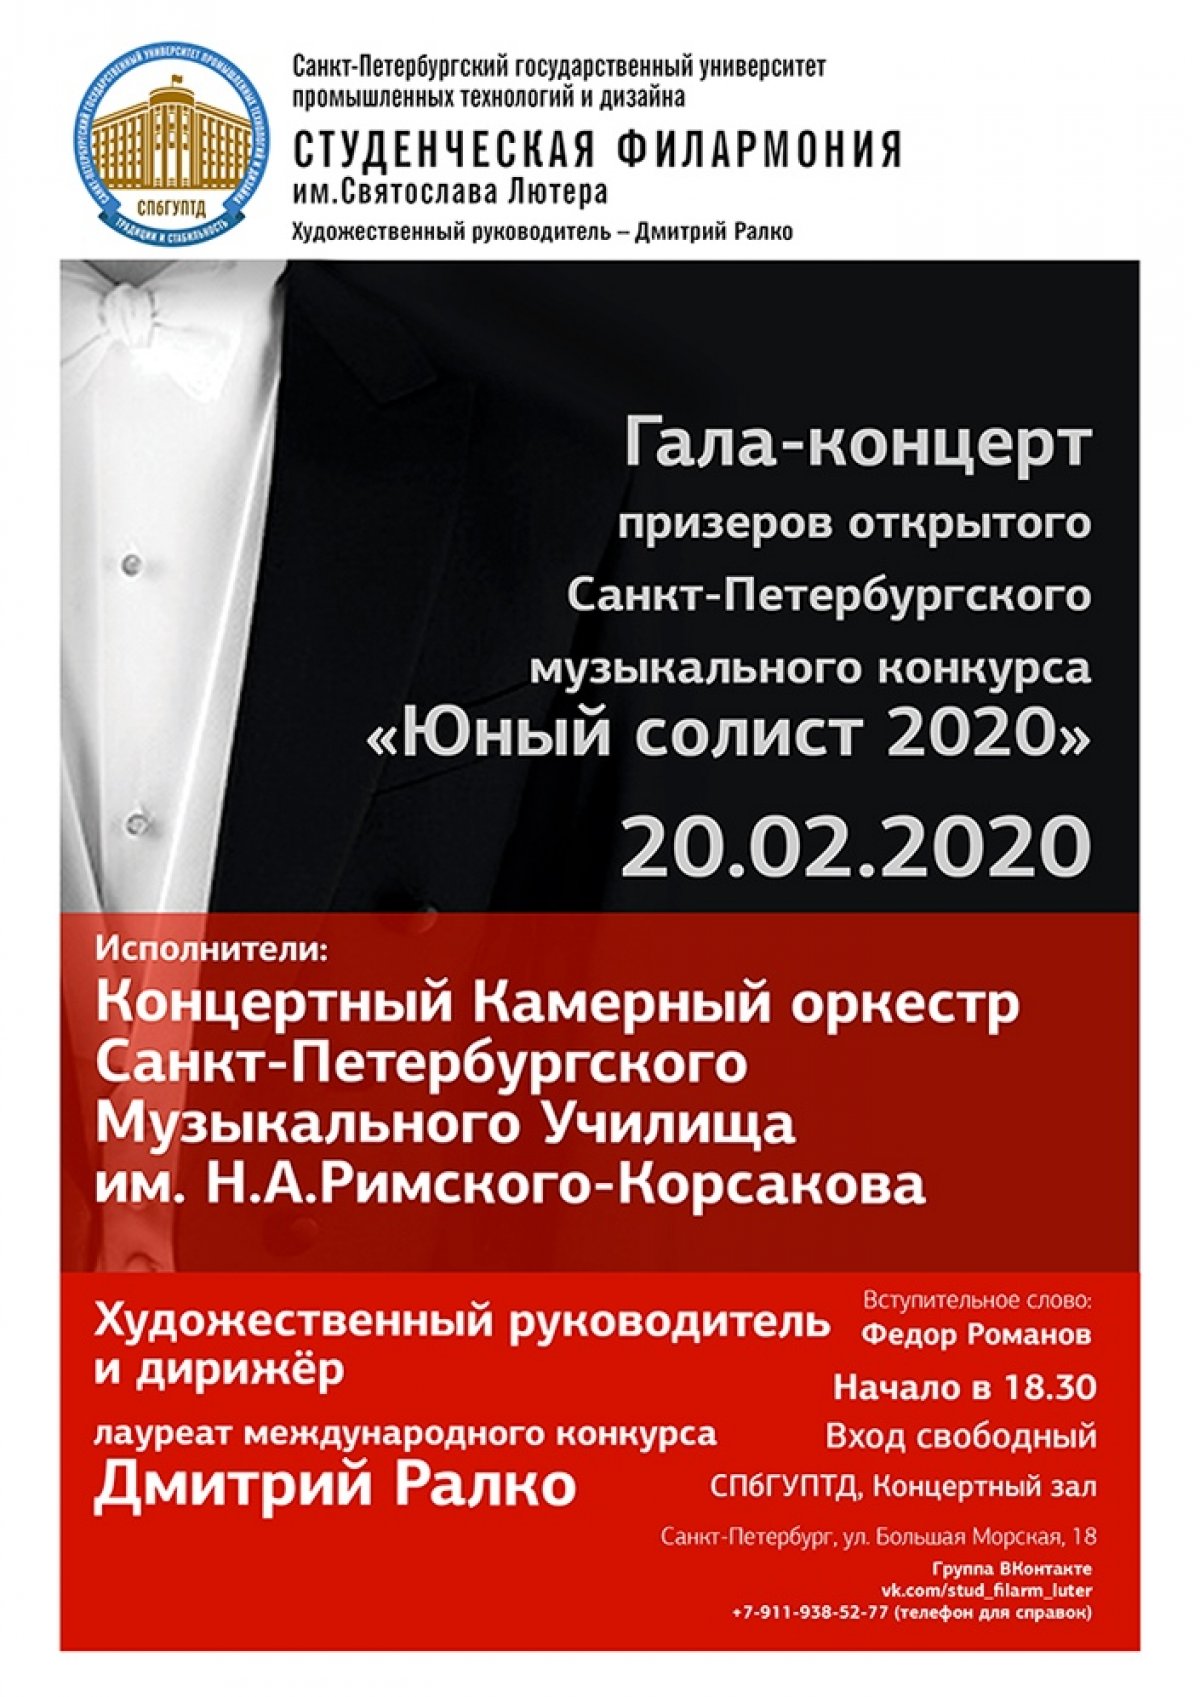 Приглашаем 20 февраля в 18:30 насладиться Гала-концертом призеров открытого Санкт-Петербургского музыкального конкурса «Юный солист 2020» в рамках проекта «Студенческая филармония».